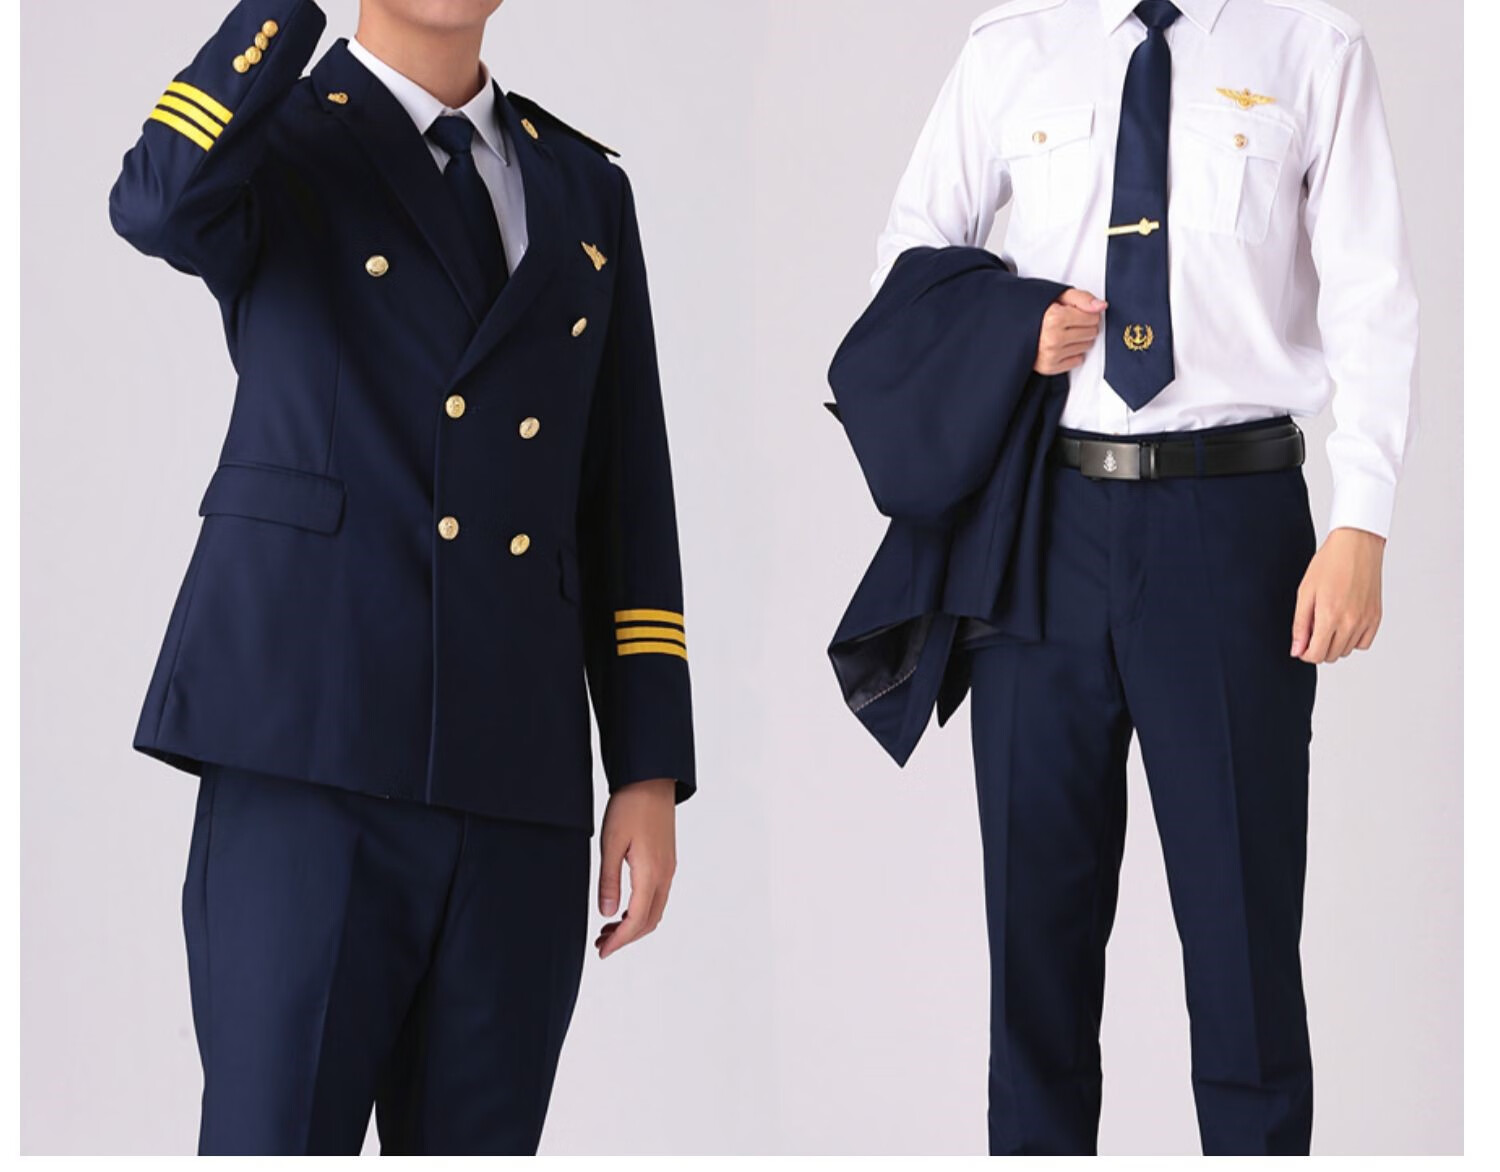 海员的职位和衣服图片图片